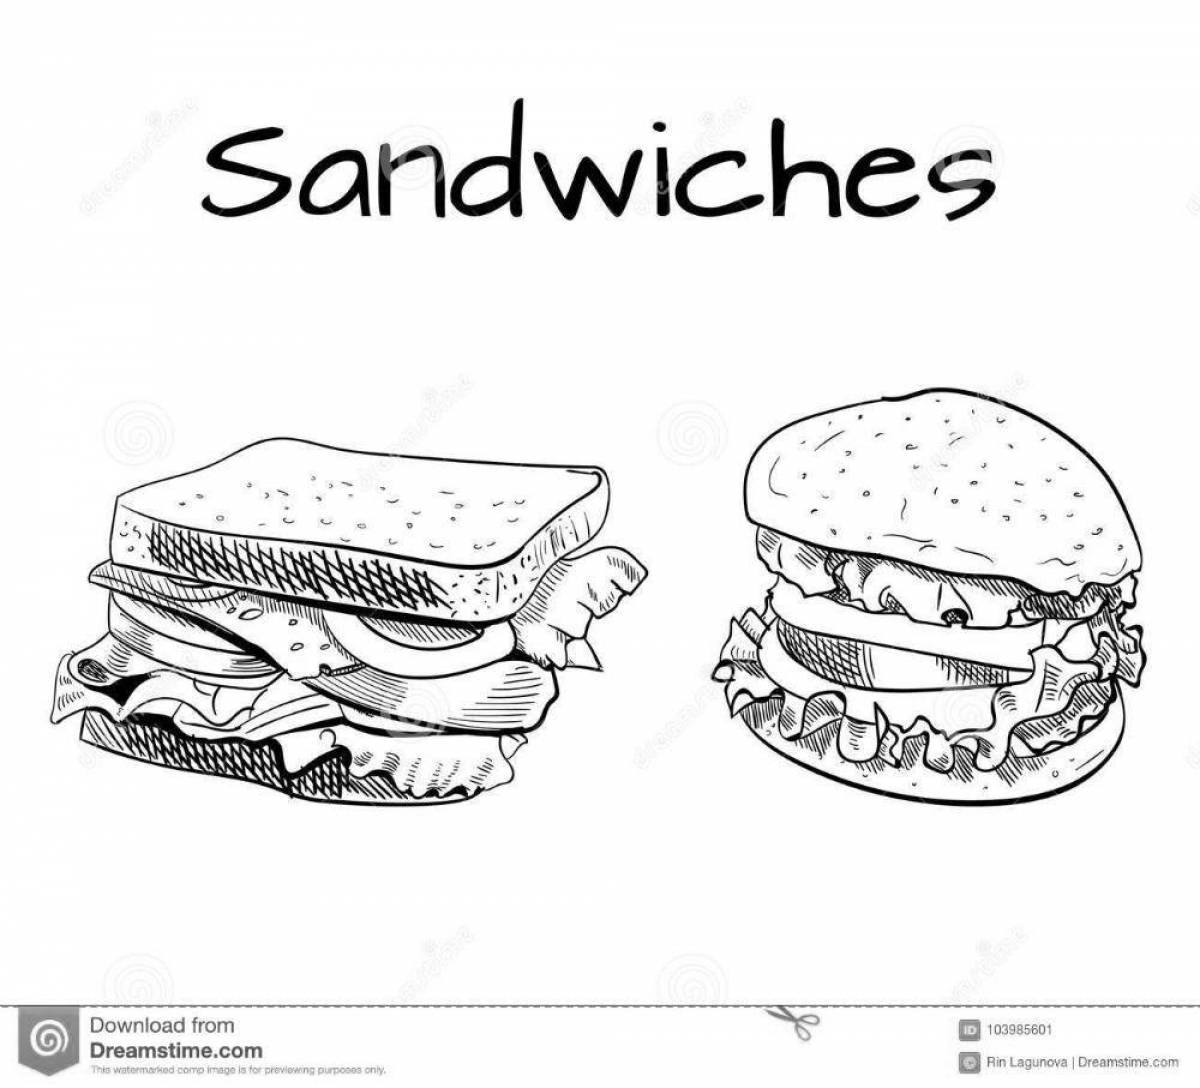 Яркие сэндвич-раскраски для детей